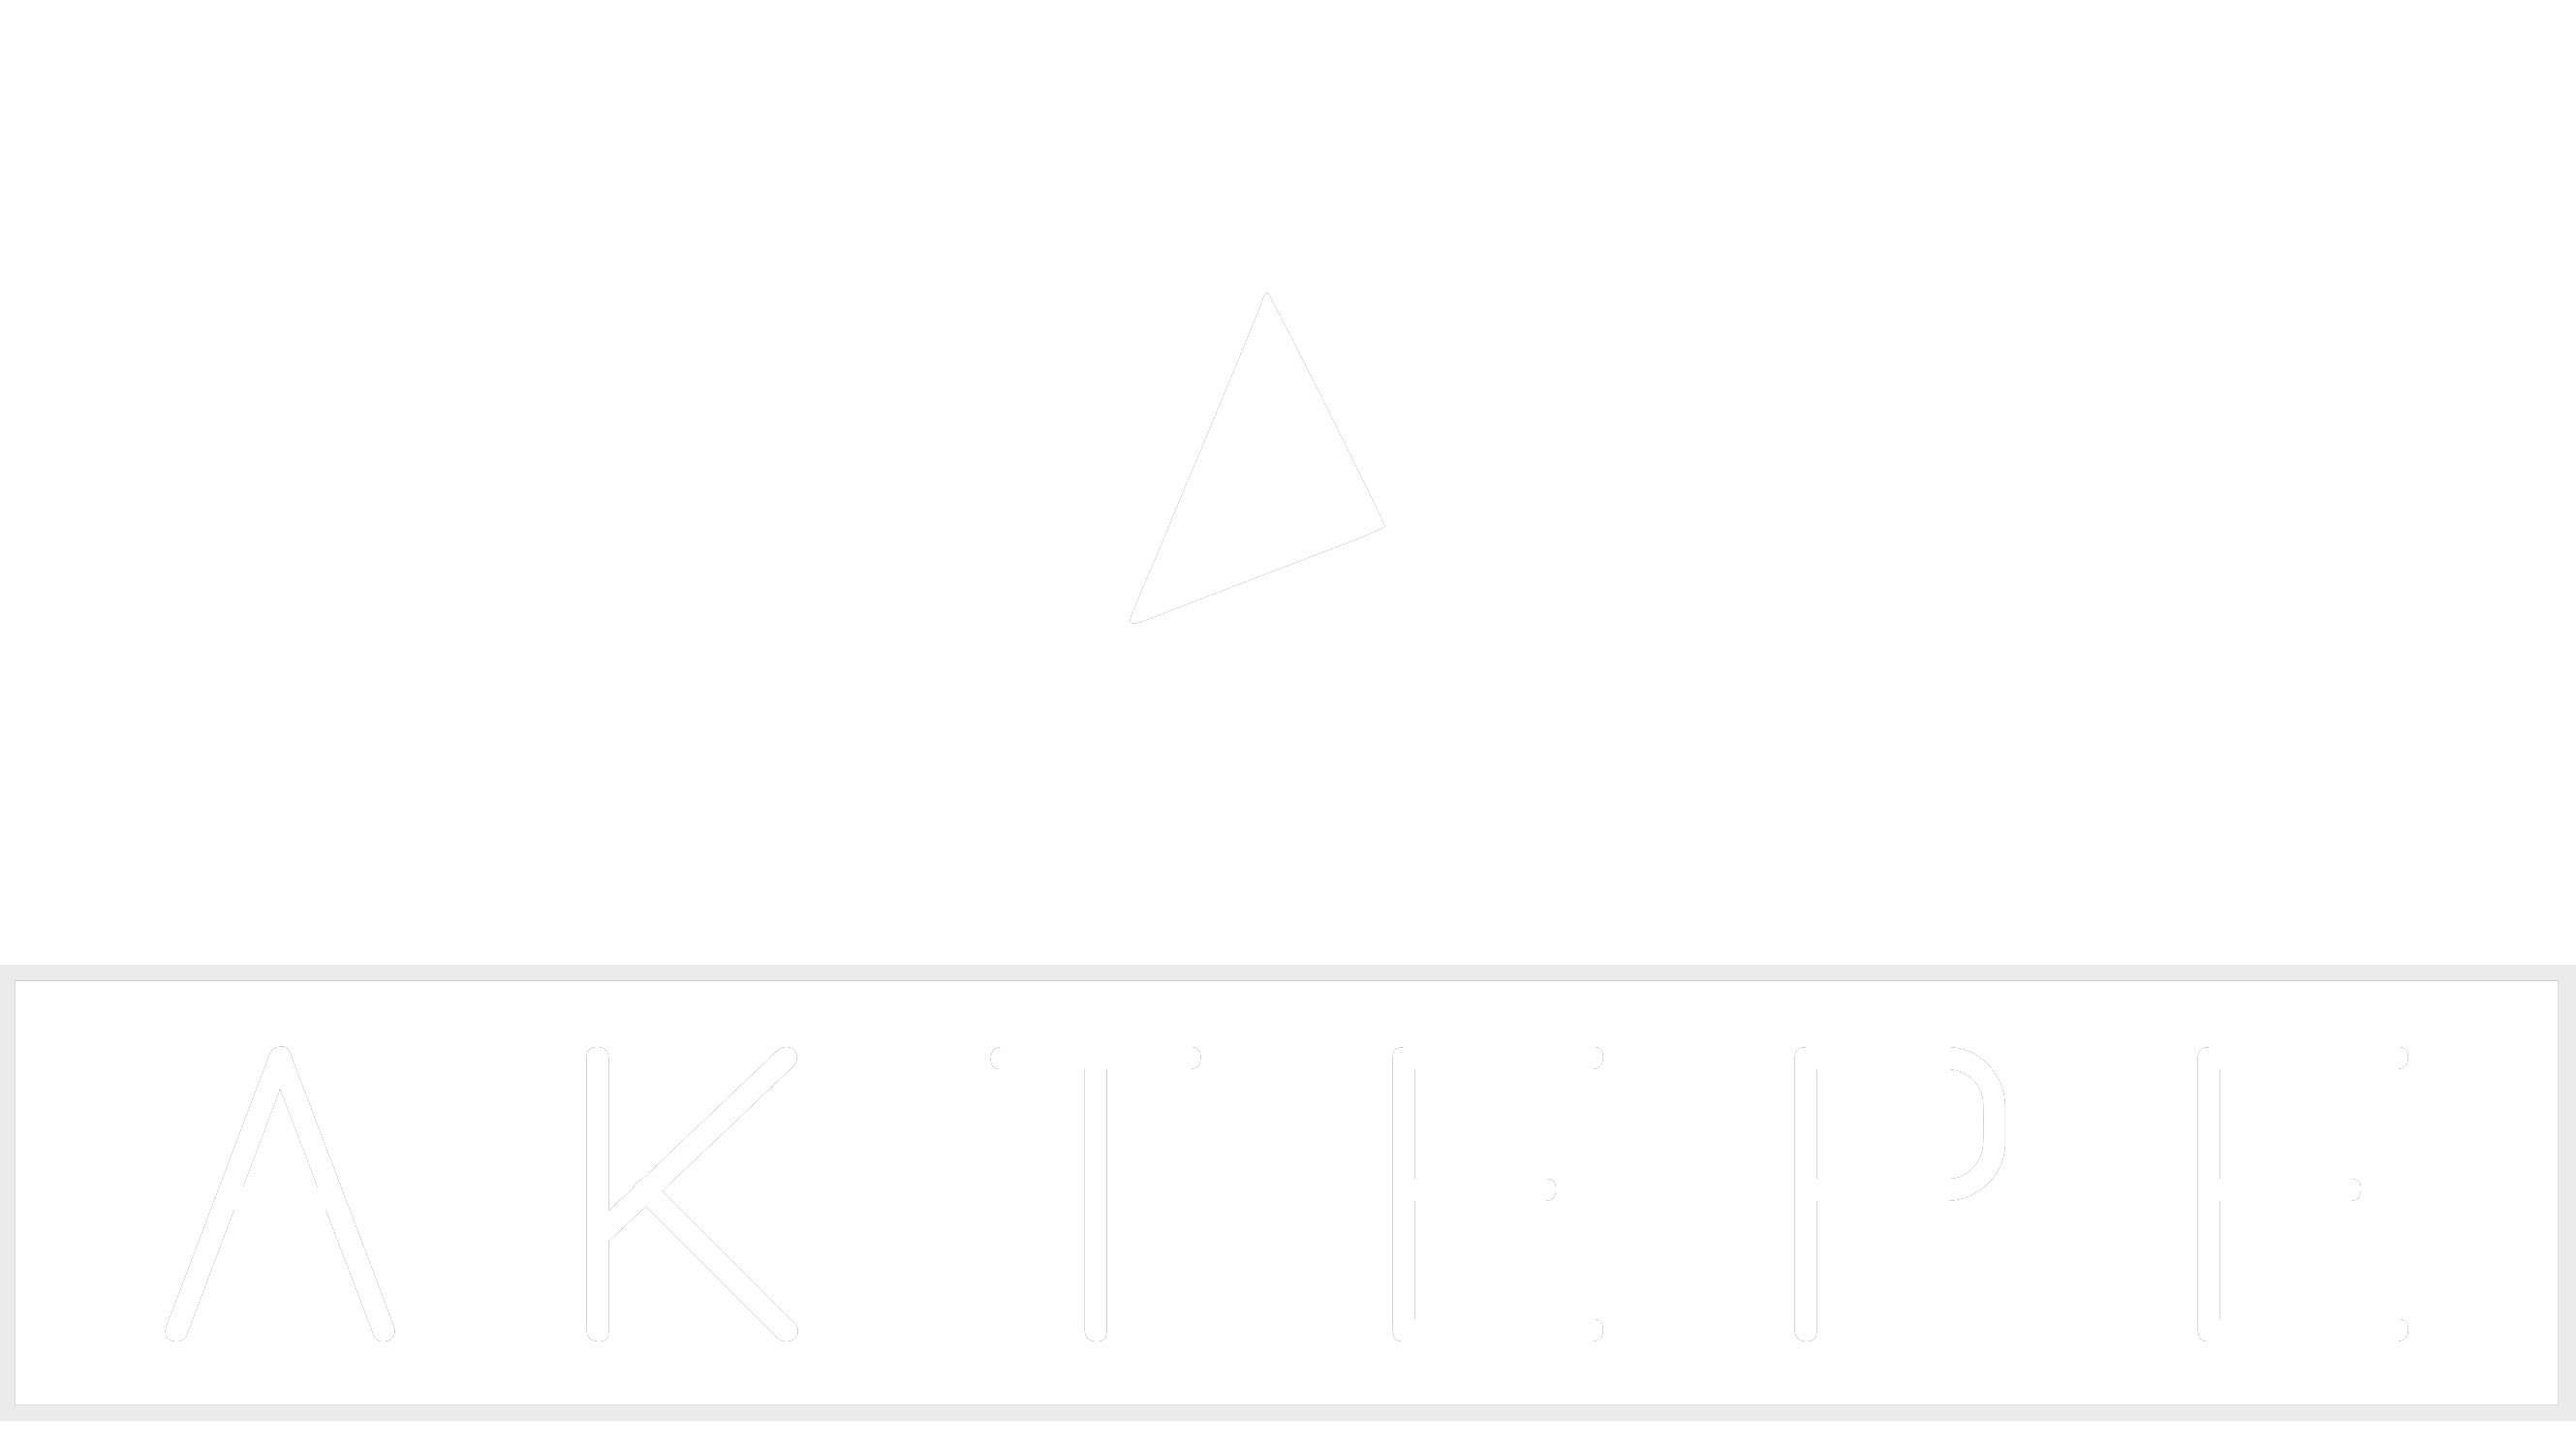 Isuzu - Aktepe Shop - Oto Müzik Görüntü Navigasyon Sistemleri ve Teyp Çerçevesi Satış Merkezi